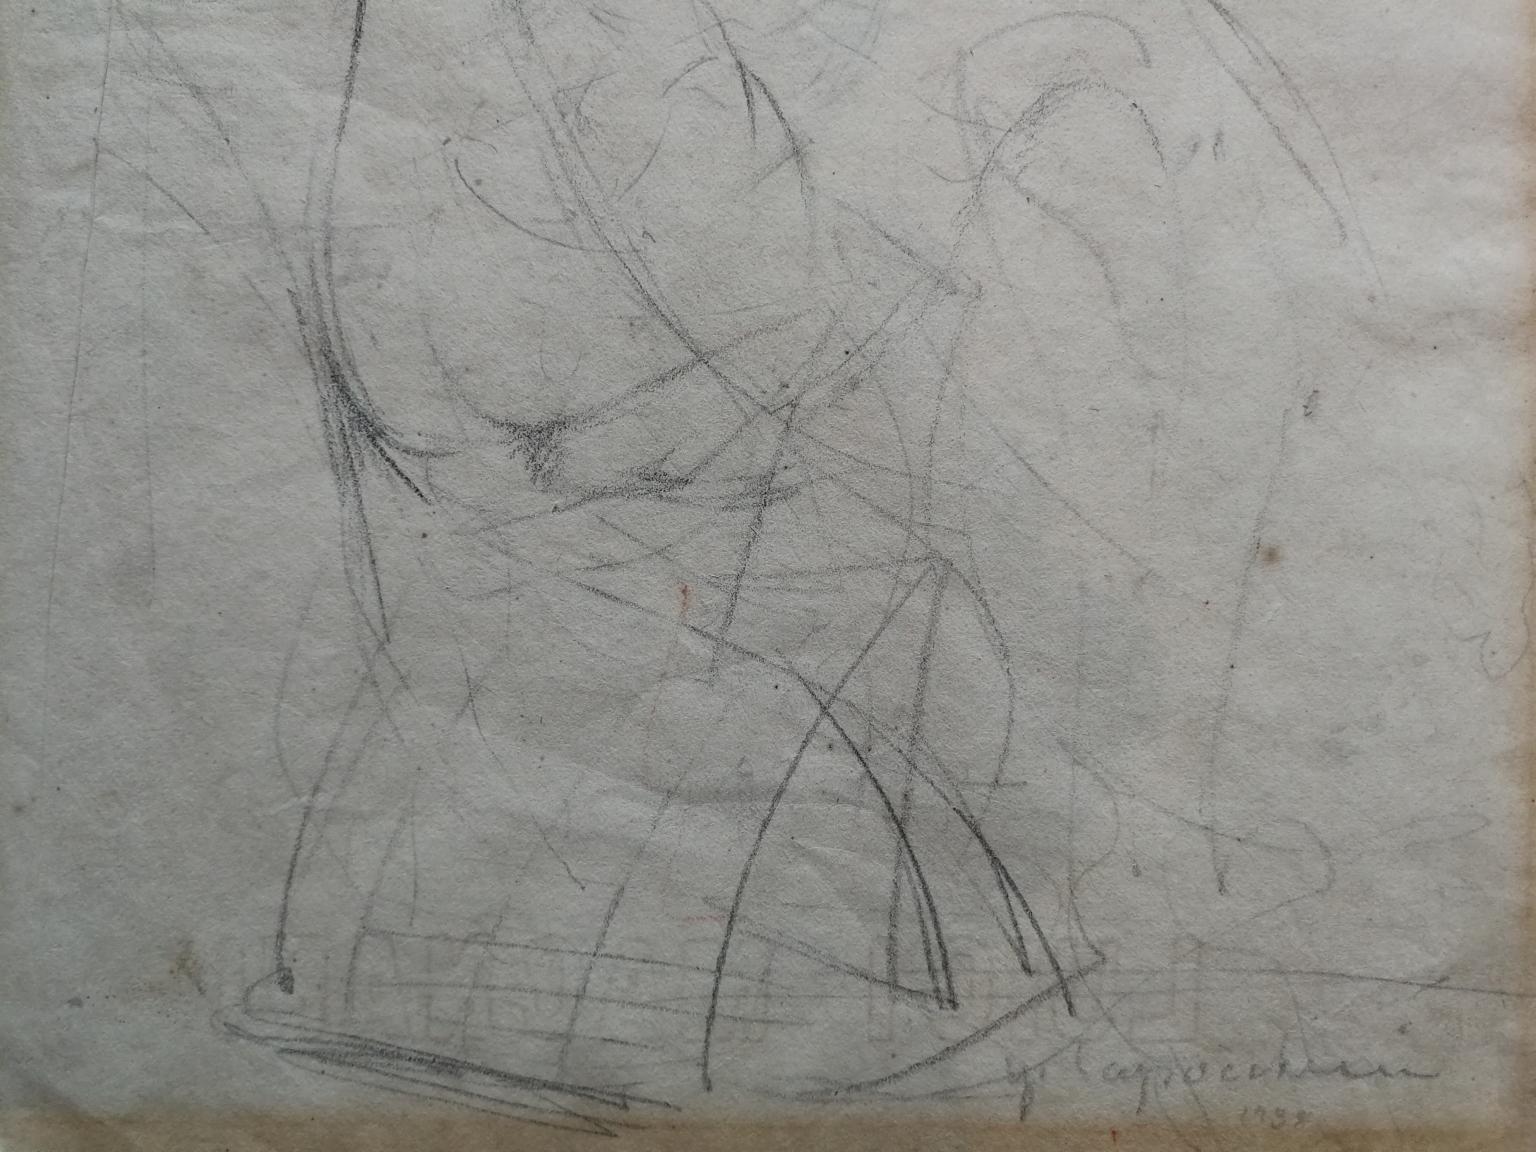 Disegno fronte retro matita su carta, 330 x 240 mm. 
Sur un côté, à la verticale, est représentée une femme nue séjournant dans un environnement domestique, arrêtée dans l'intention de voler vers l'auteur. Certains aspects de l'expression et de la